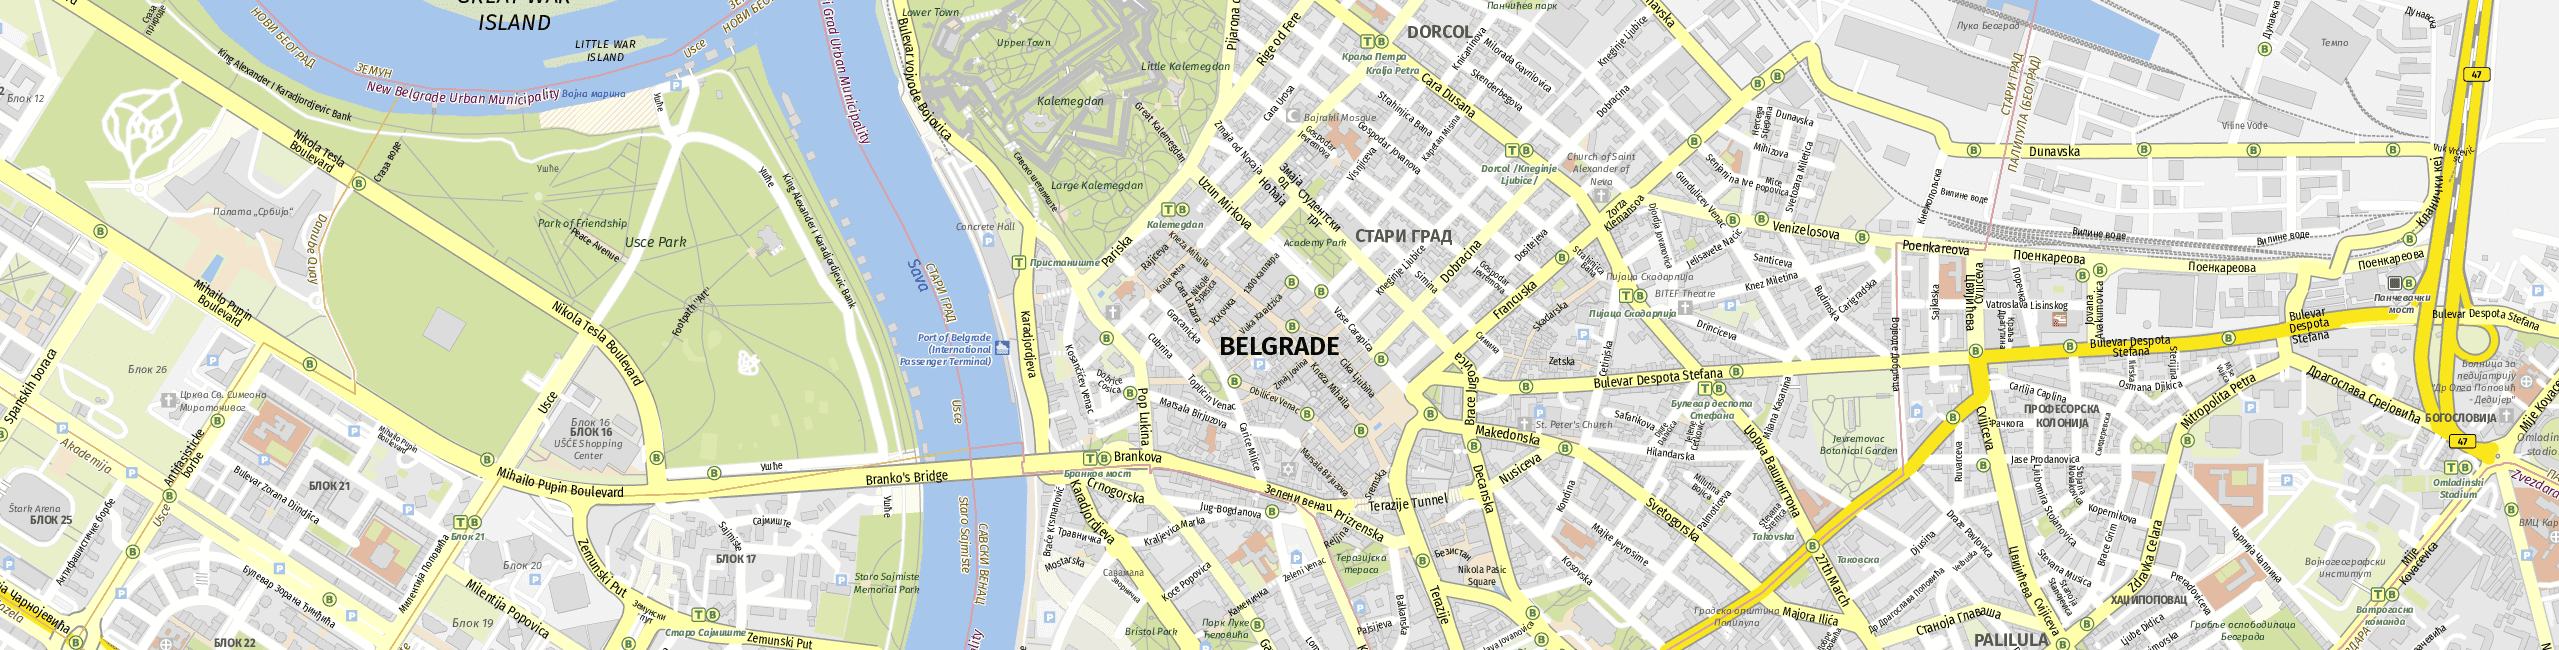 Stadtplan Belgrade zum Downloaden.